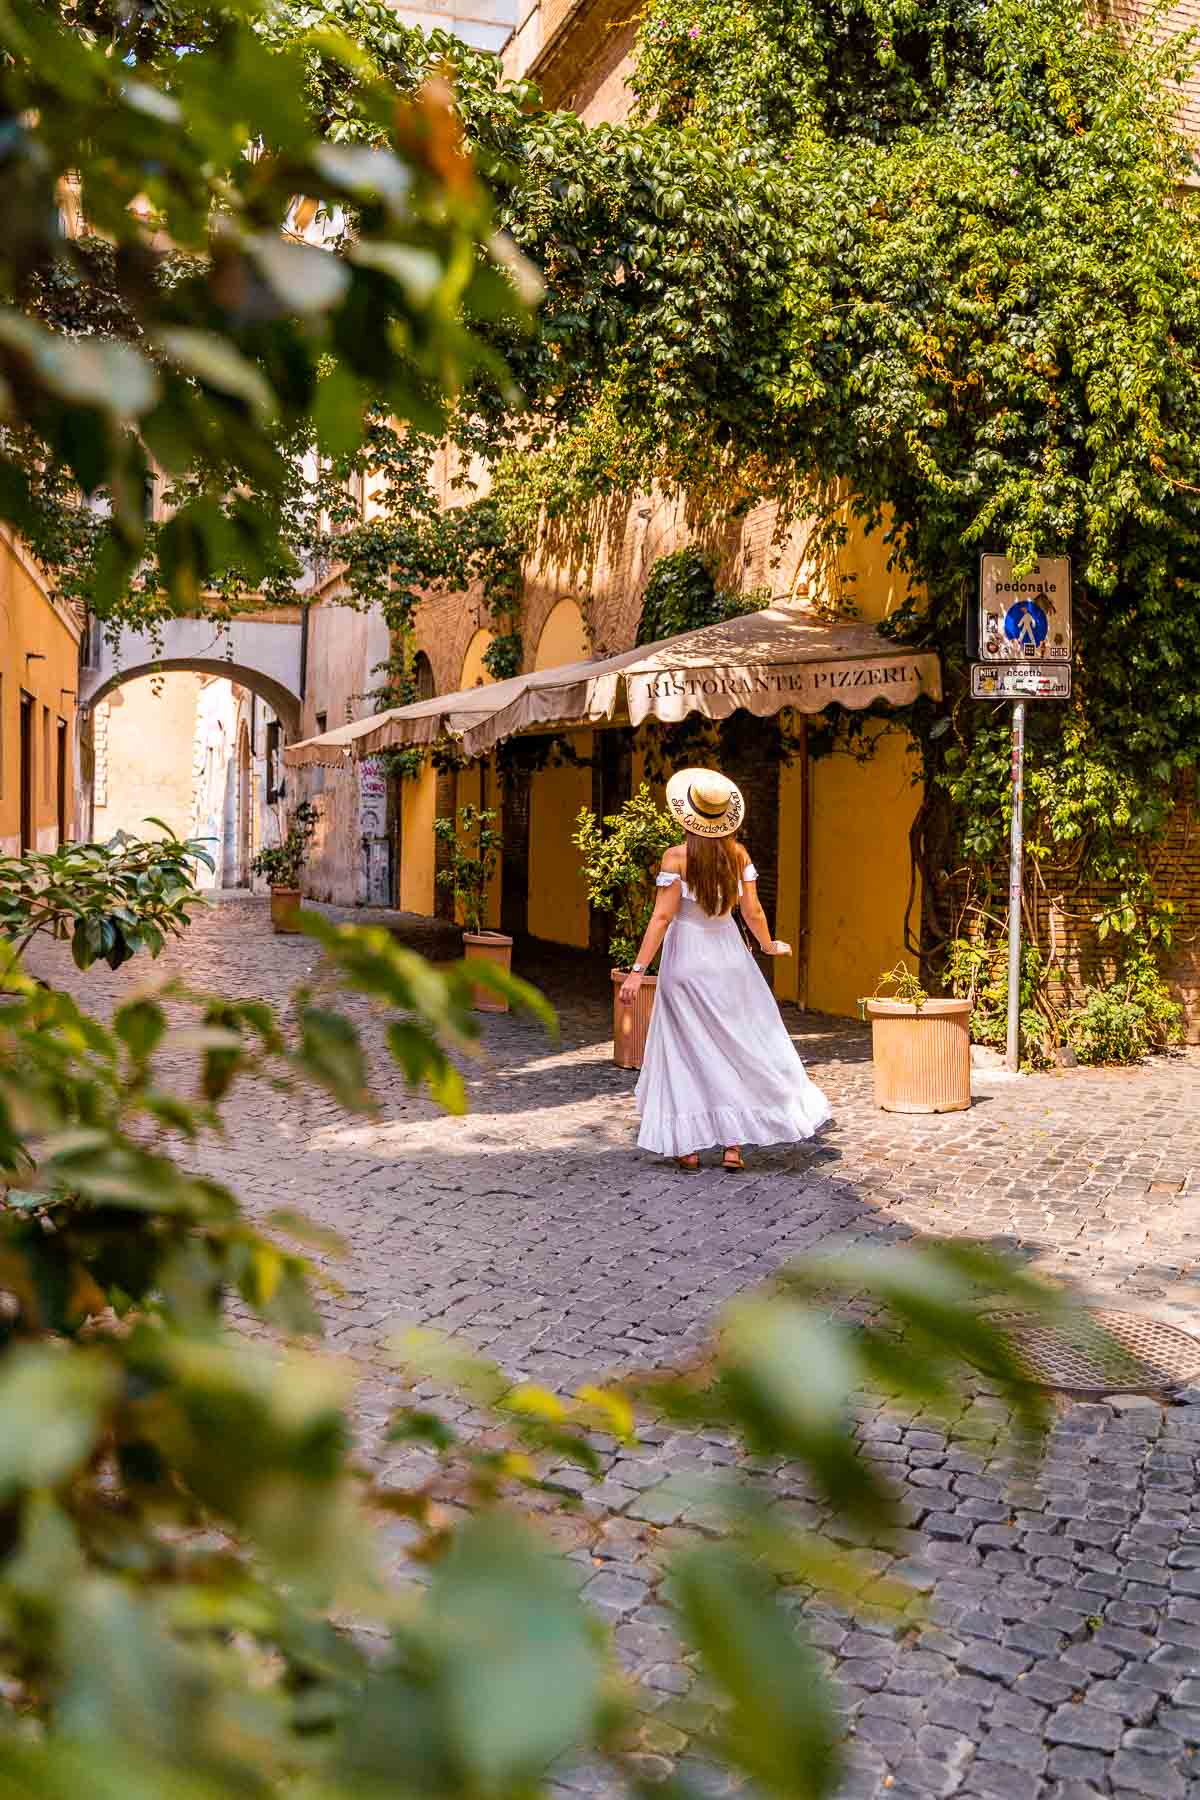 Girl in a white dress in the Trastevere neighborhood in Rome, Italy